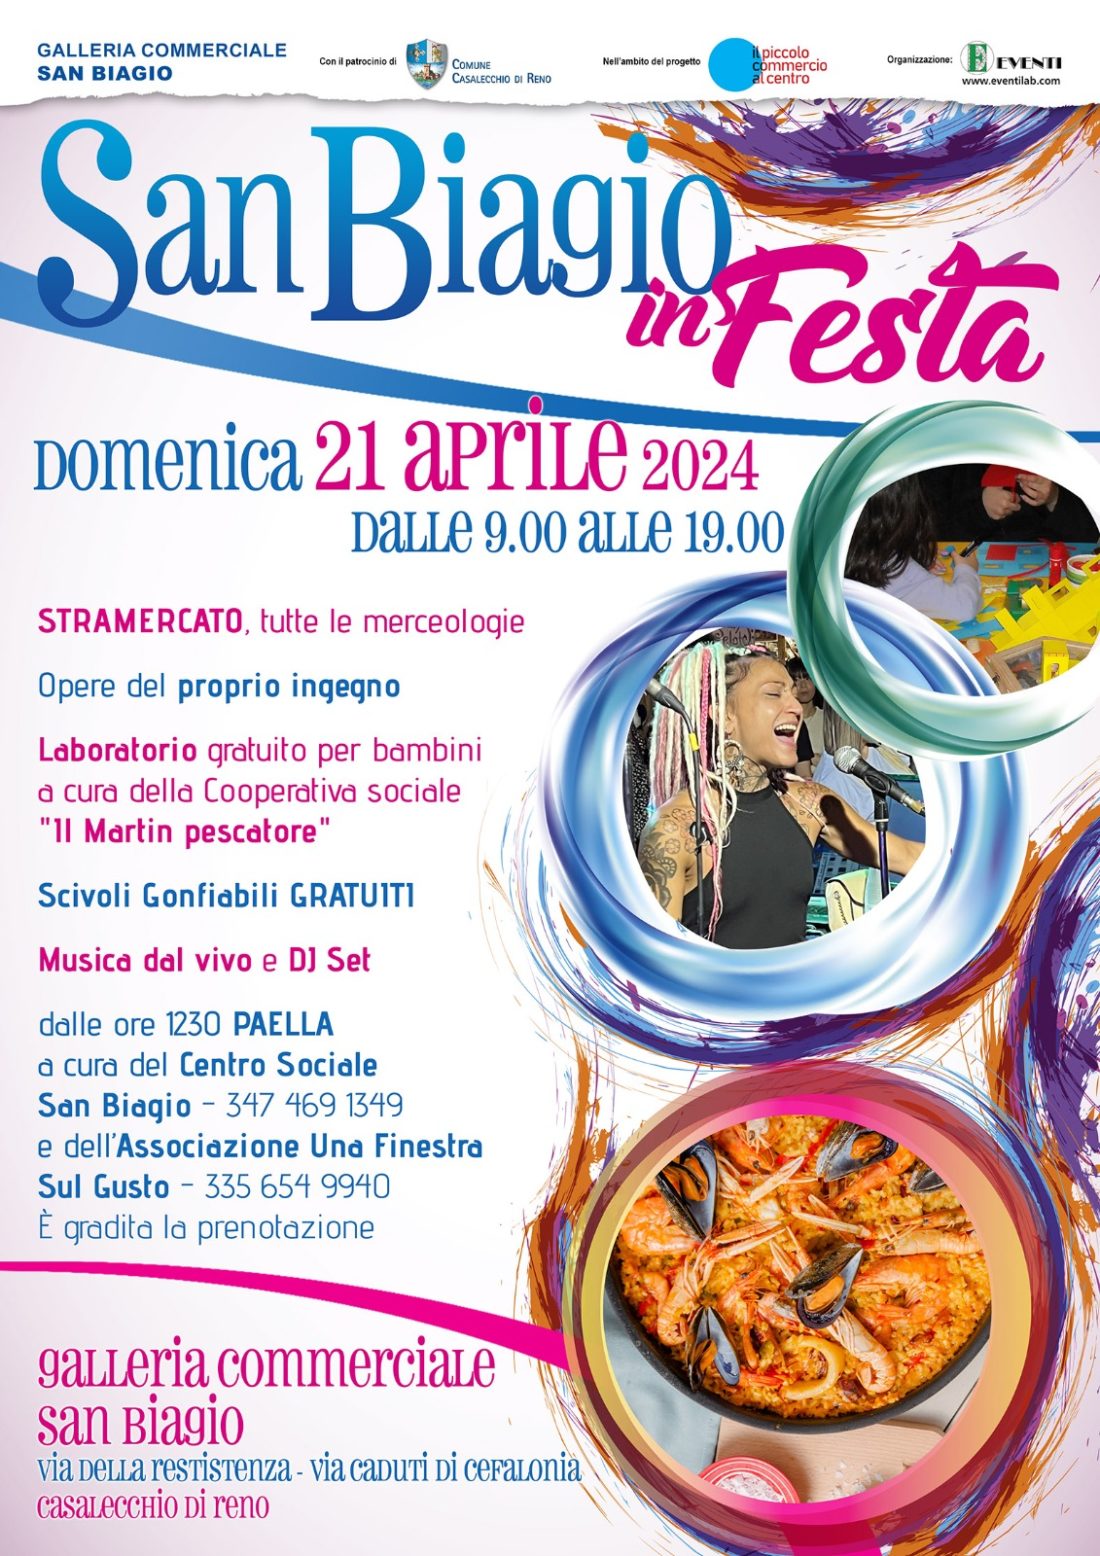 Evento del 21 aprile 2024 “San Biagio in festa”